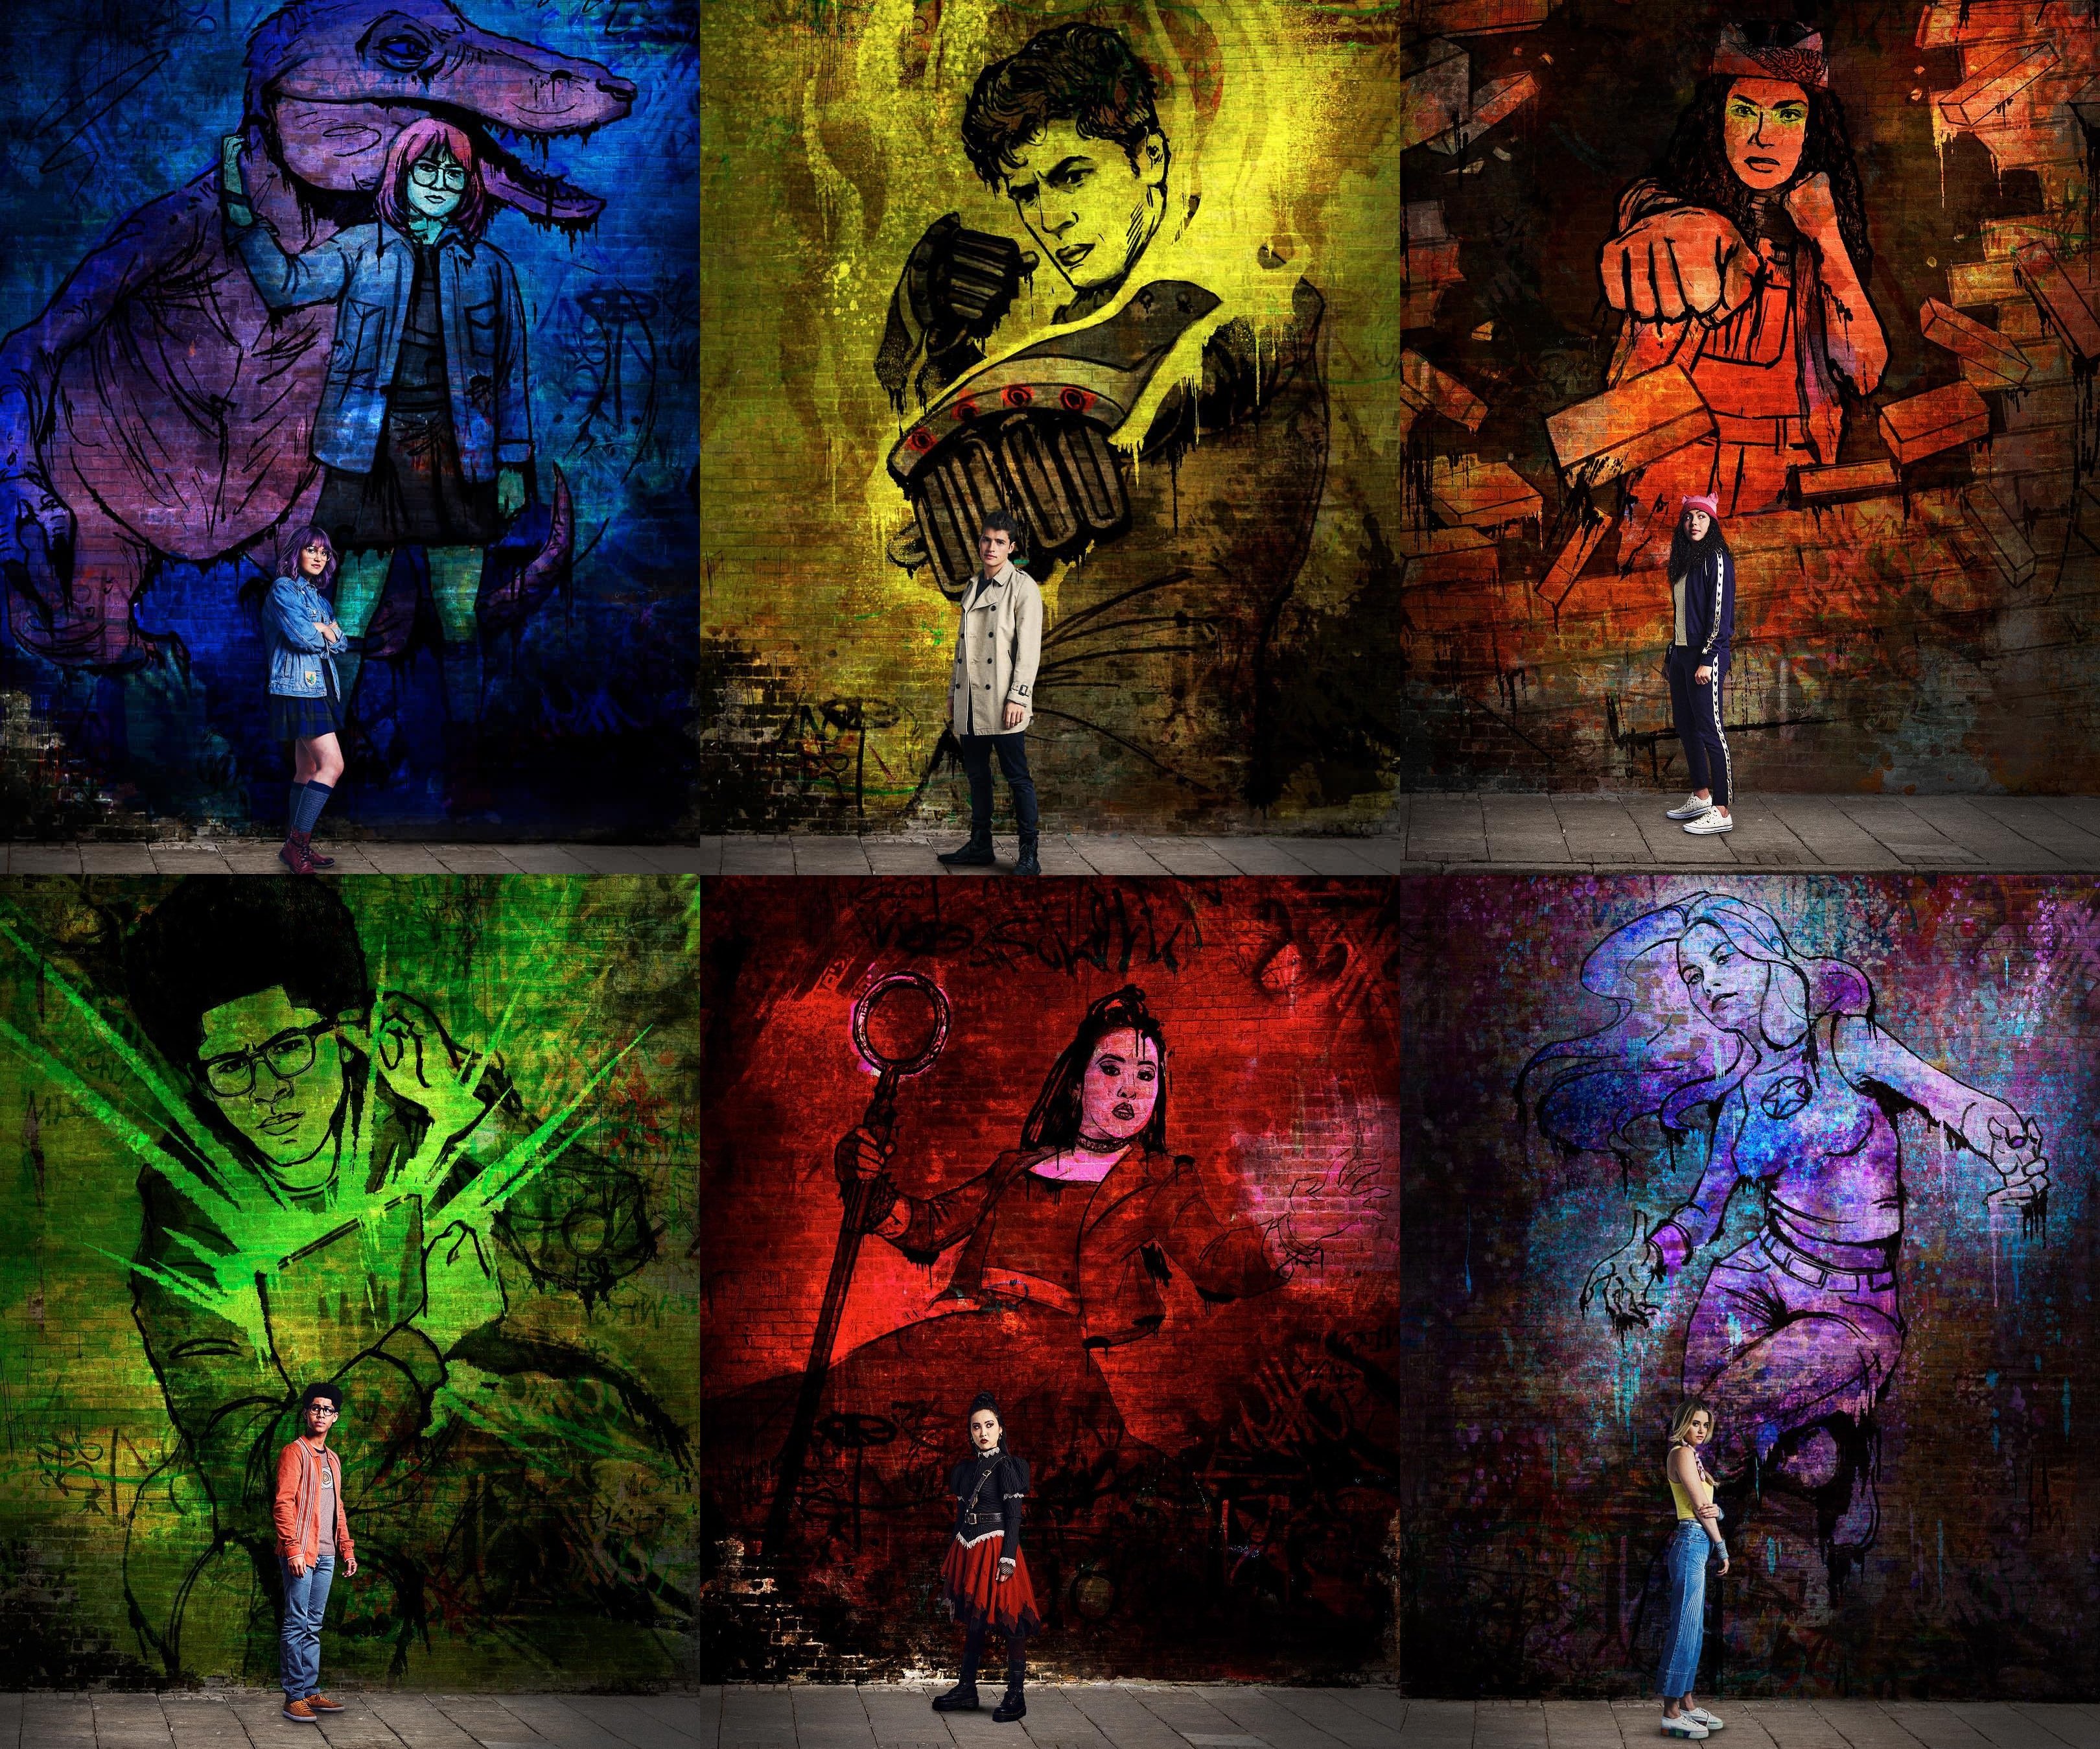 runaways wallpaper, art, street art, visual arts, painting, graffiti